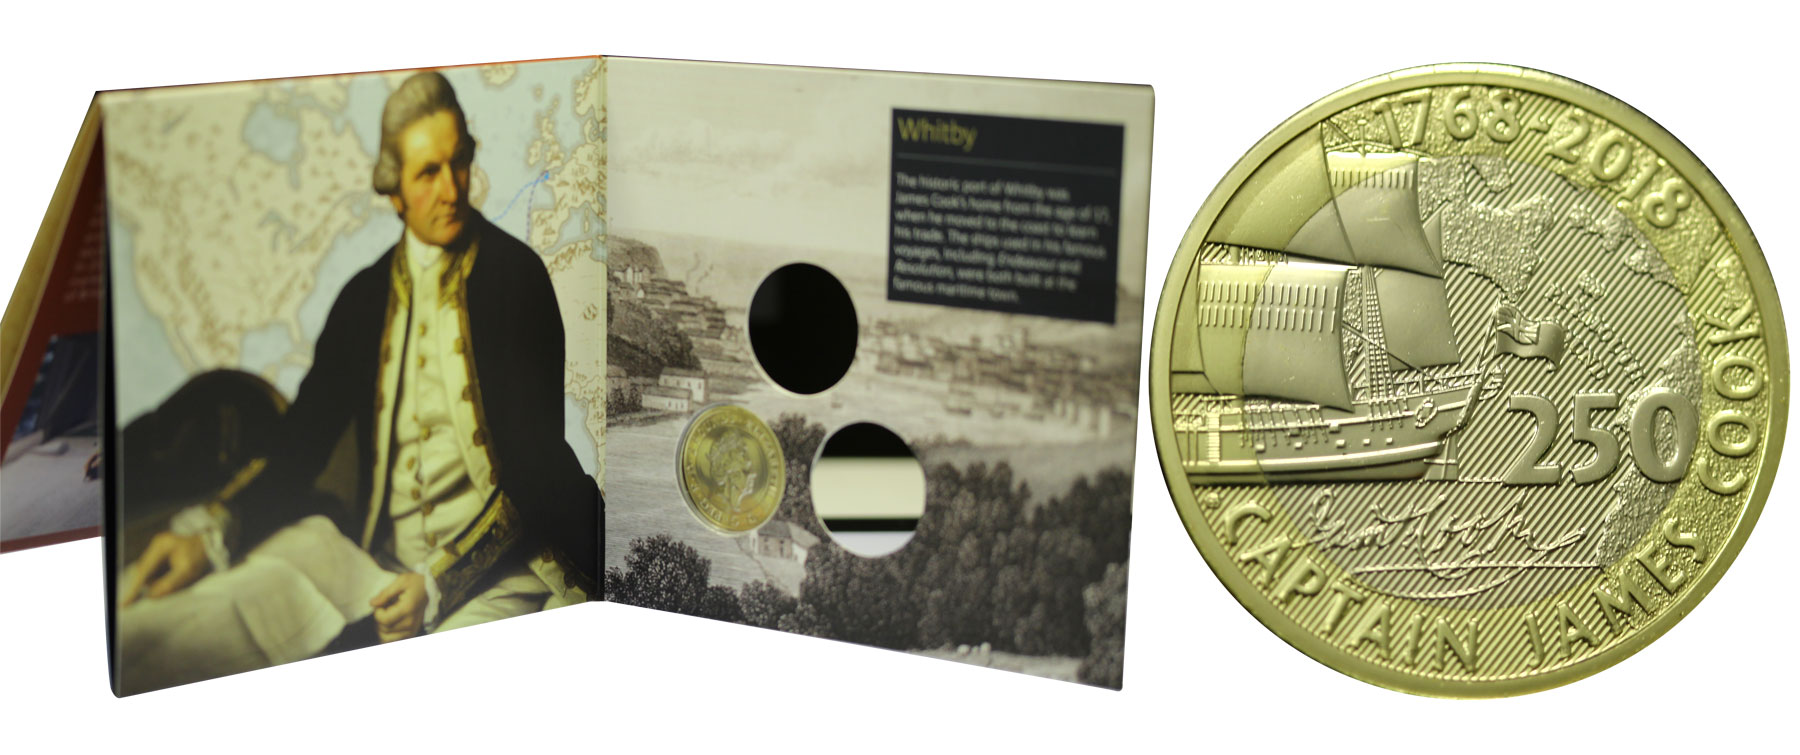 "James Cook - 1a emissione" - Moneta commemorativa da 2 Pounds in nickel